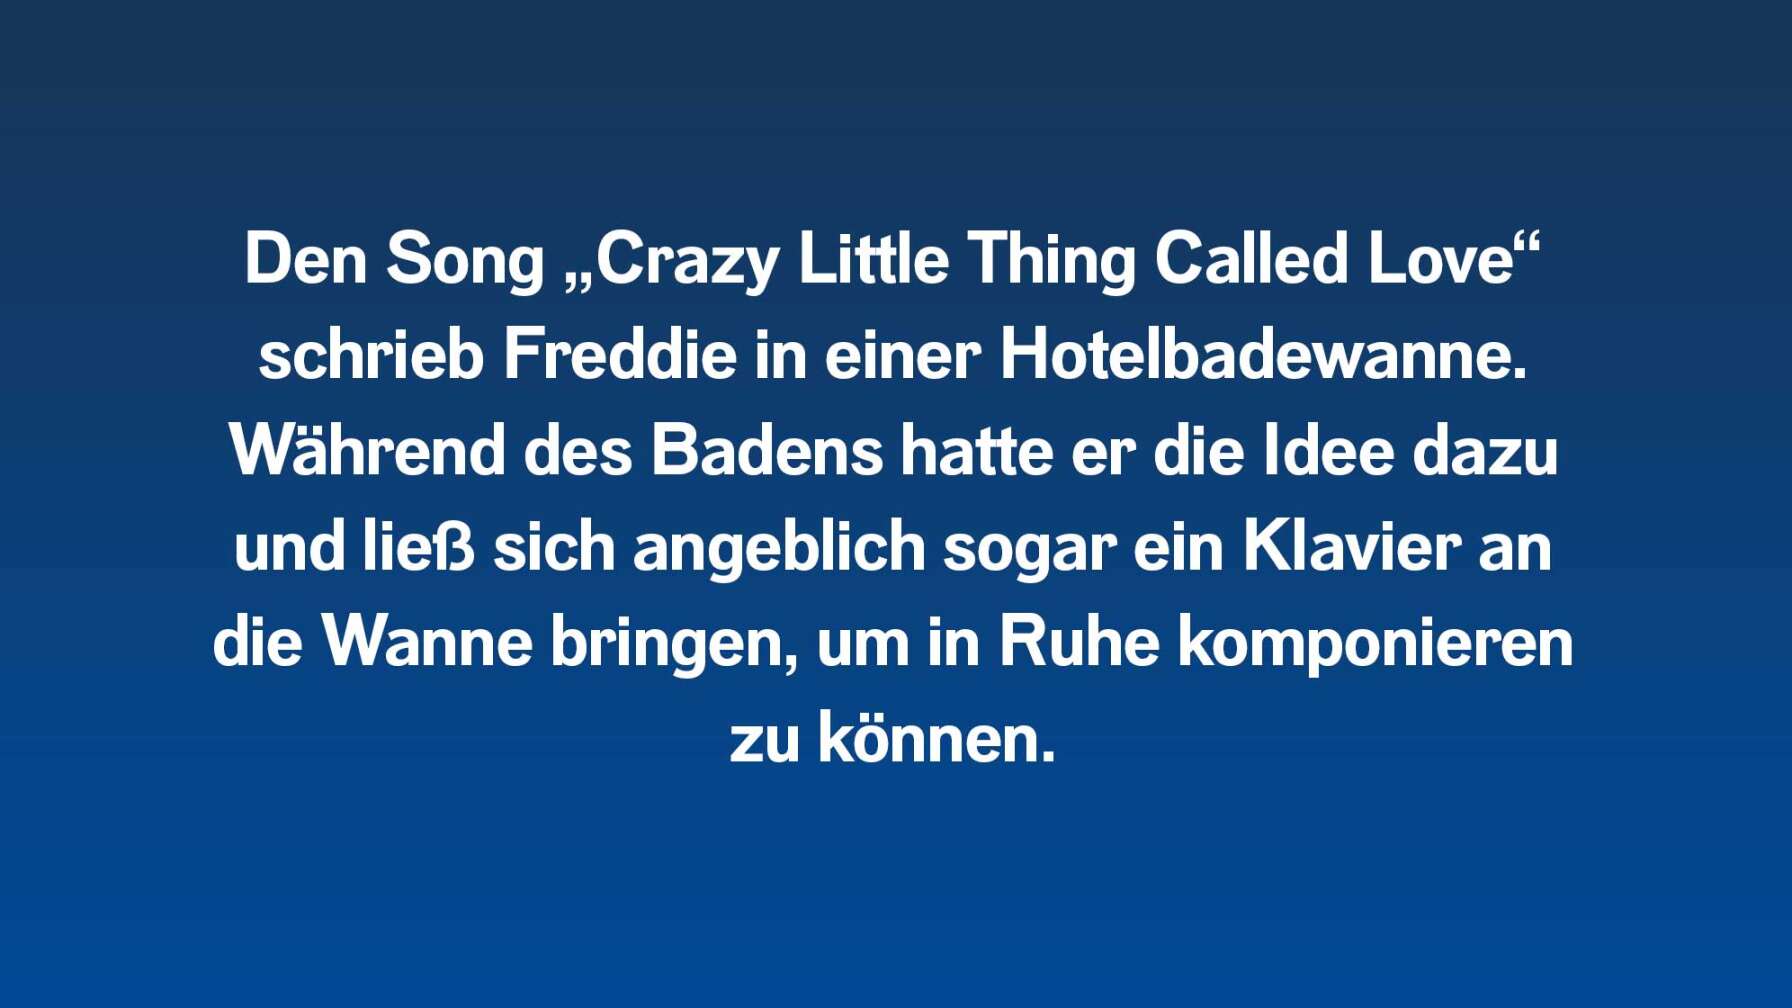 Den Song „Crazy Little Thing Called Love“ schrieb Freddie in einer Hotelbadewanne. Während des Badens hatte er die Idee dazu und ließ sich angeblich sogar ein Klavier an die Wanne bringen, um in Ruhe komponieren zu können.